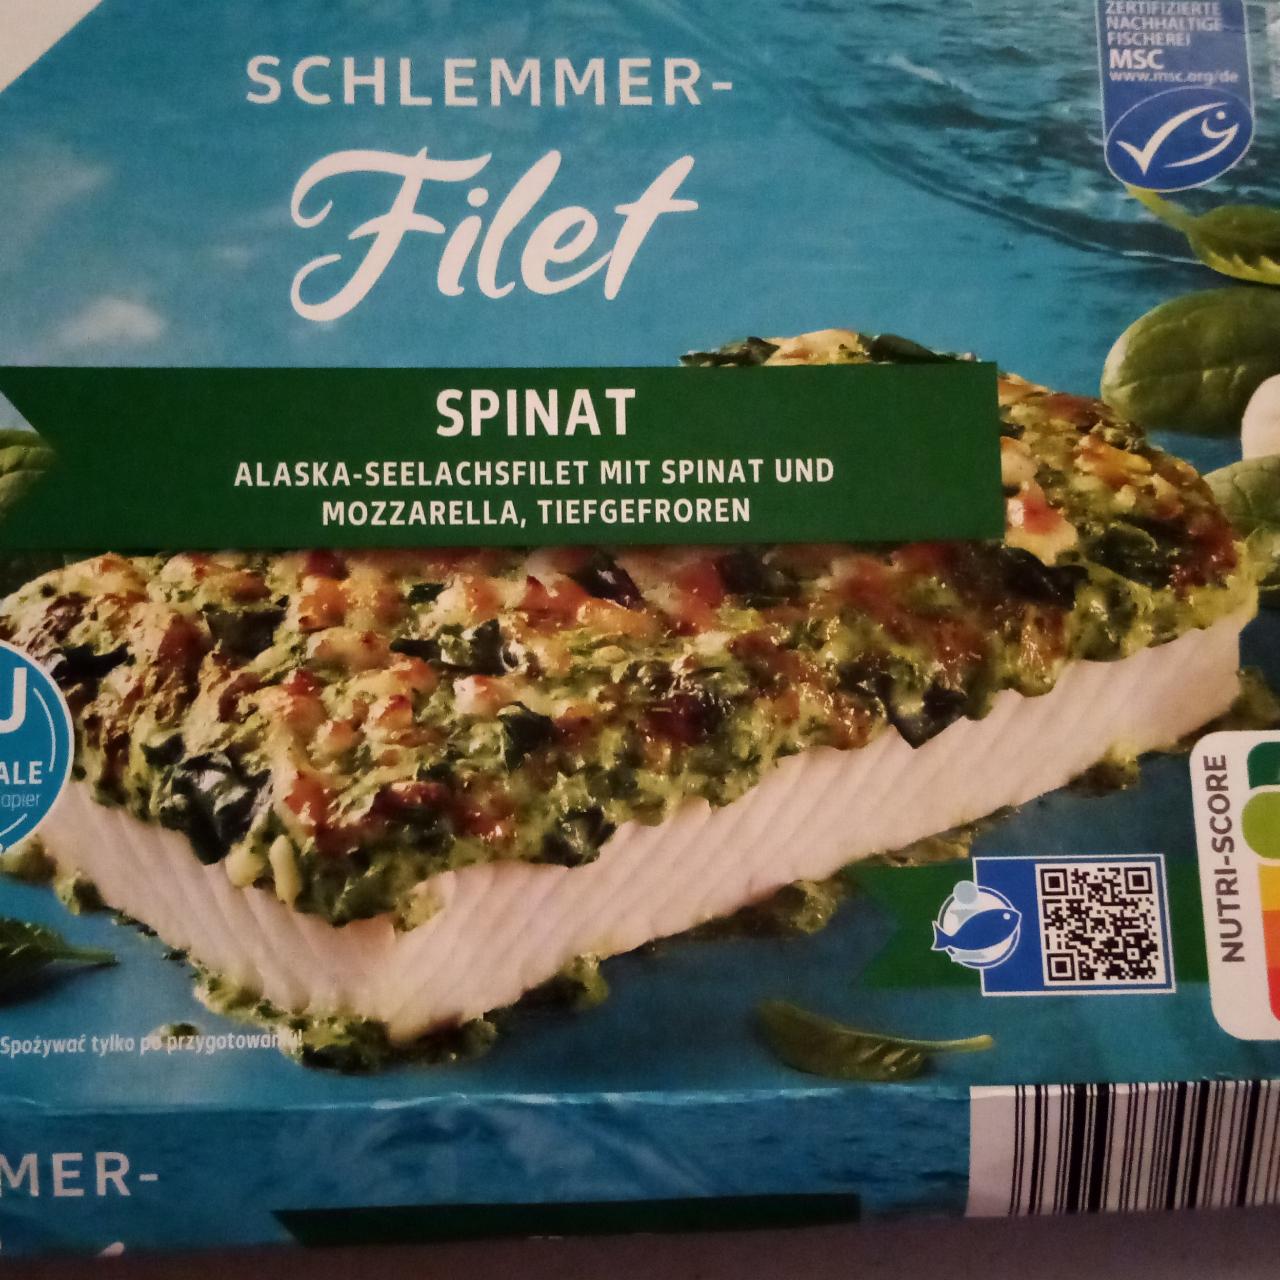 Fotografie - Schlemmer Filet Spinat Alaska - seelachsfilet mit spinat und mozzarella, tiefgefroren K-Classic